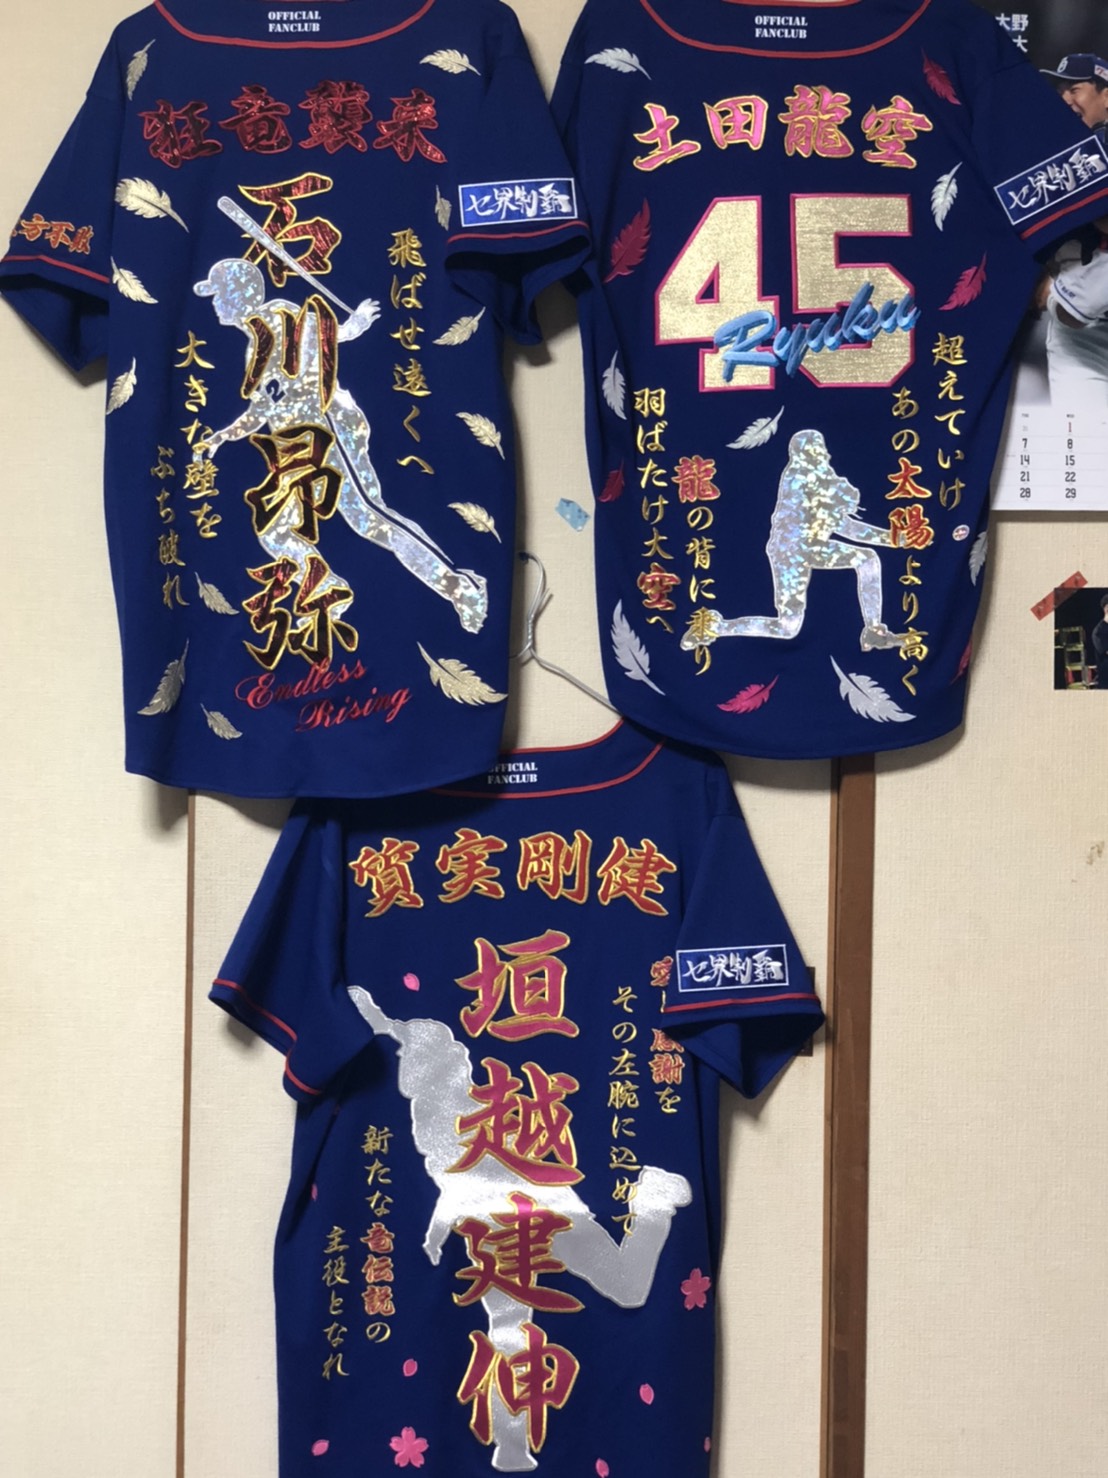 ドラゴンズFCユニへのオリジナル刺繍「石川昂弥選手＆垣越建伸選手 